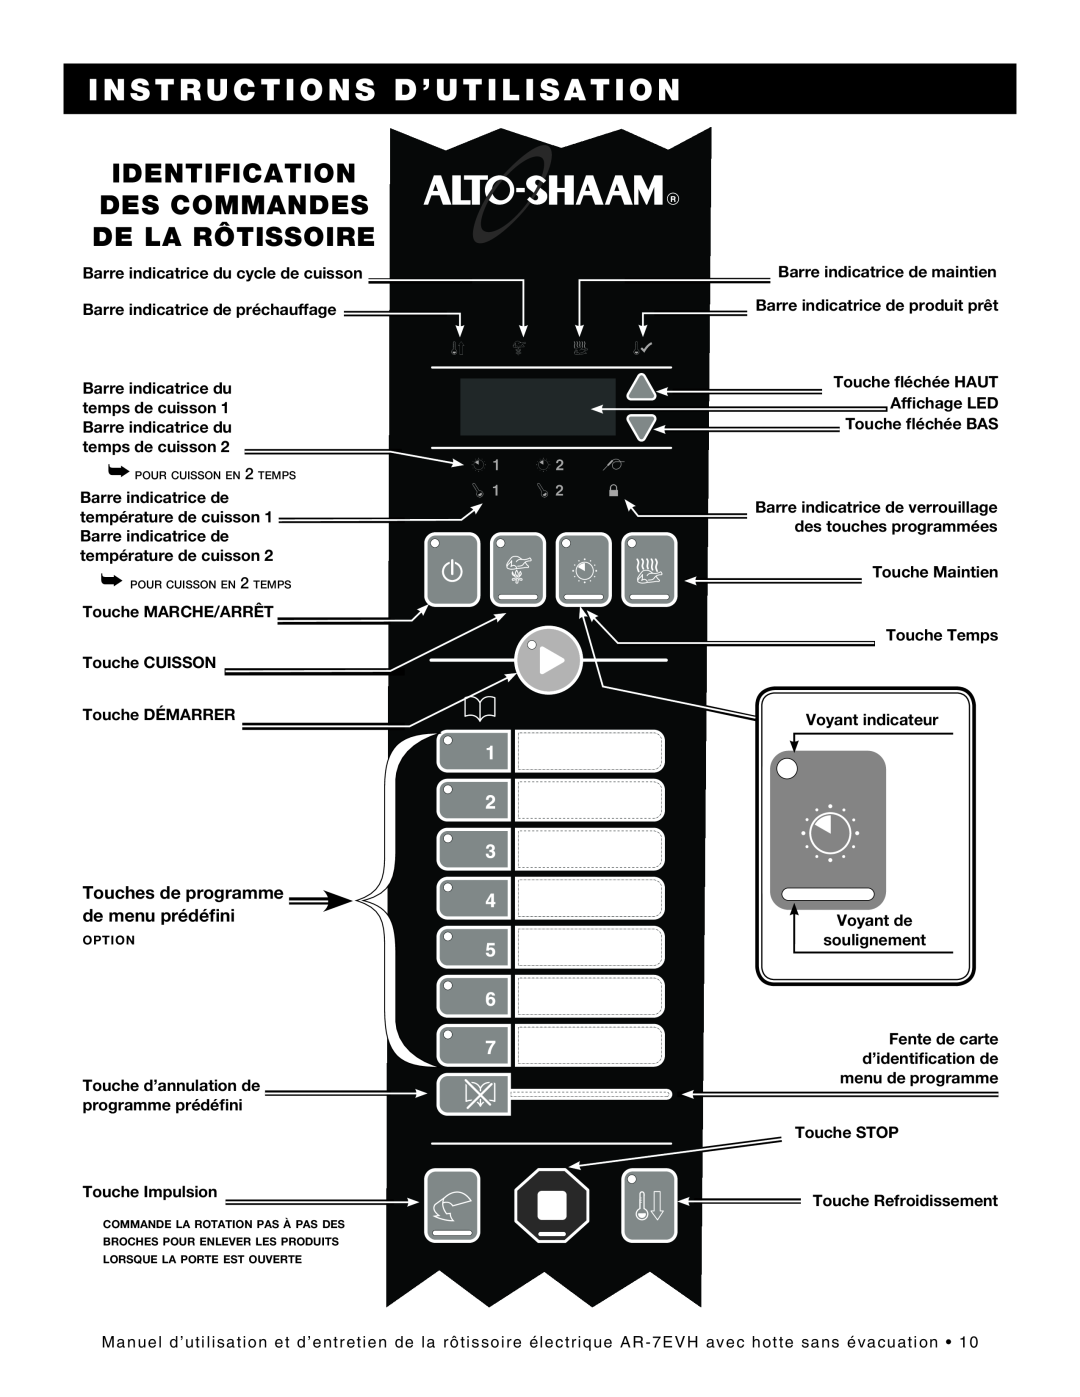 Alto-Shaam ar-7evh manual Identification Des Commandes De La Rôtissoire, Instructions D’Utilisation, température de cuisson 